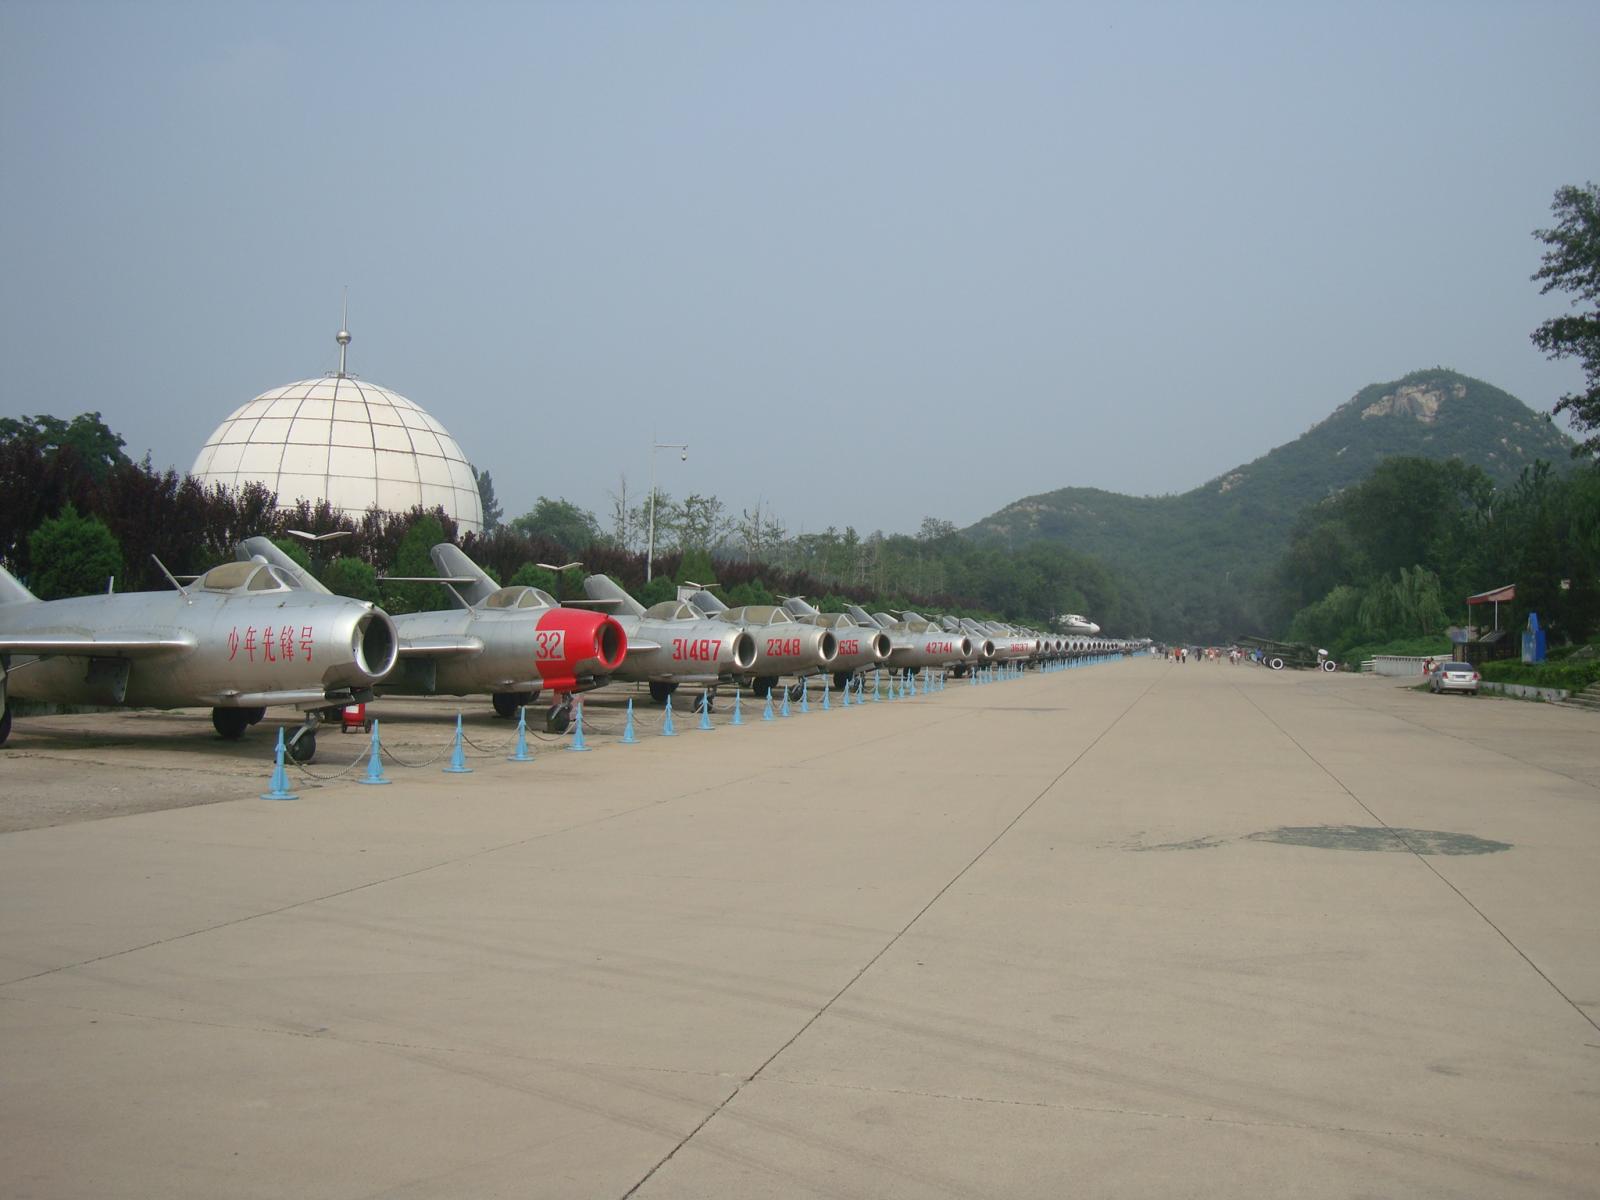 Aviation museum beijing